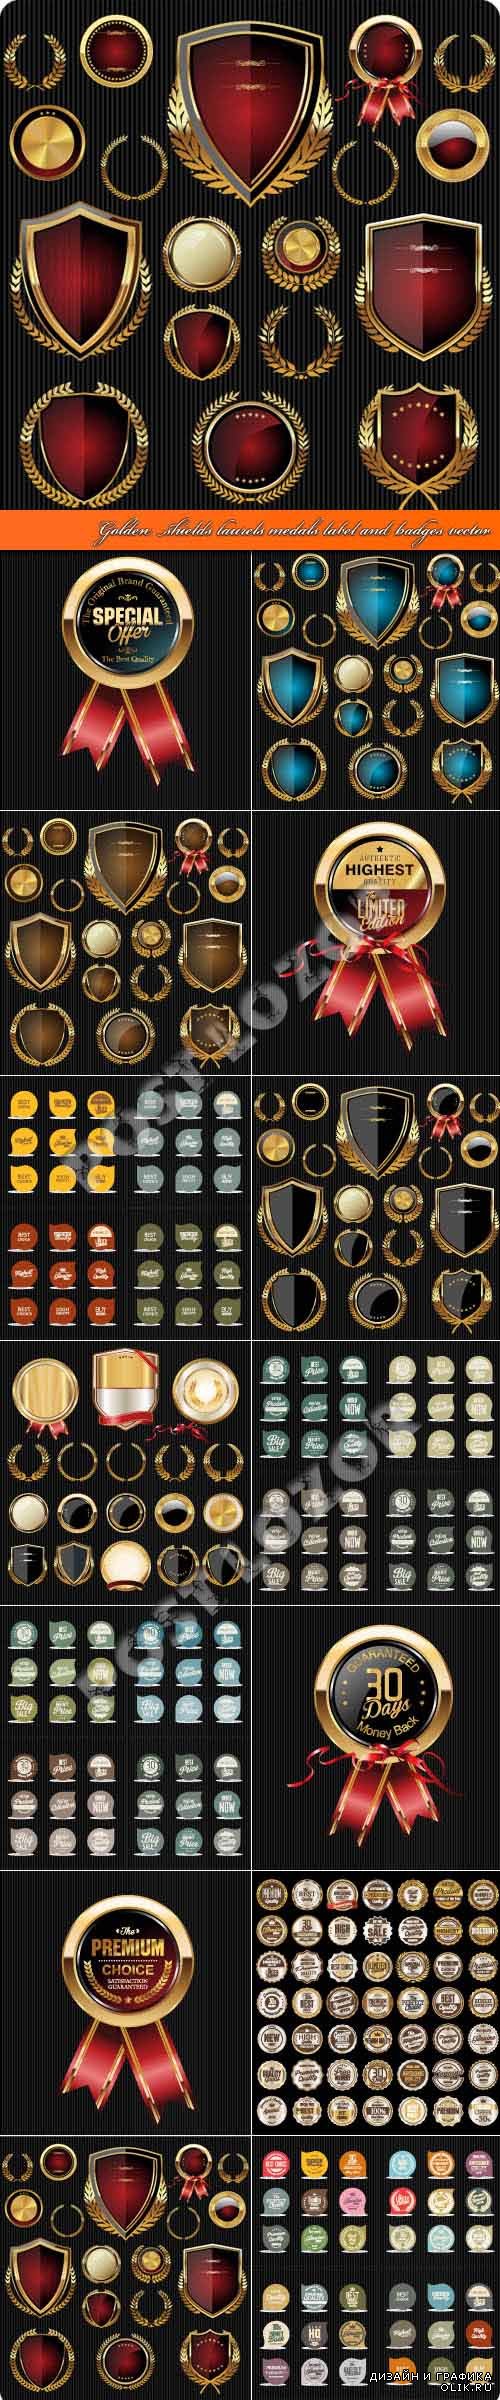 Golden shields laurels medals label and badges vector